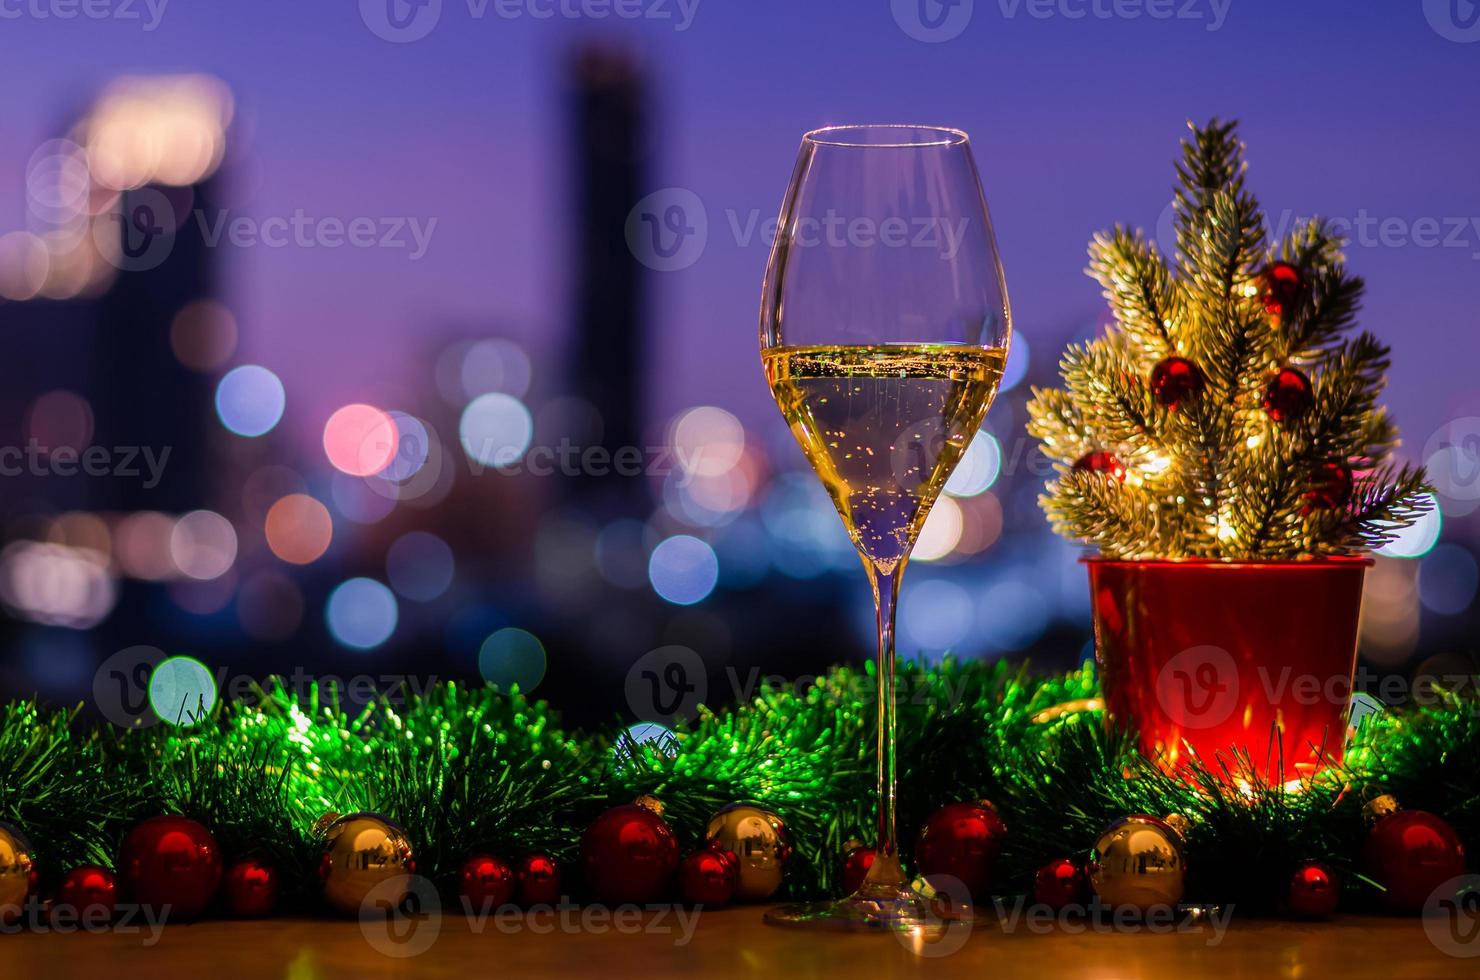 en glas av vit vin sätter på trä- tabell med jul träd dekorerad med struntsak ornament och lampor på färgrik stad bokeh lampor bakgrund. foto